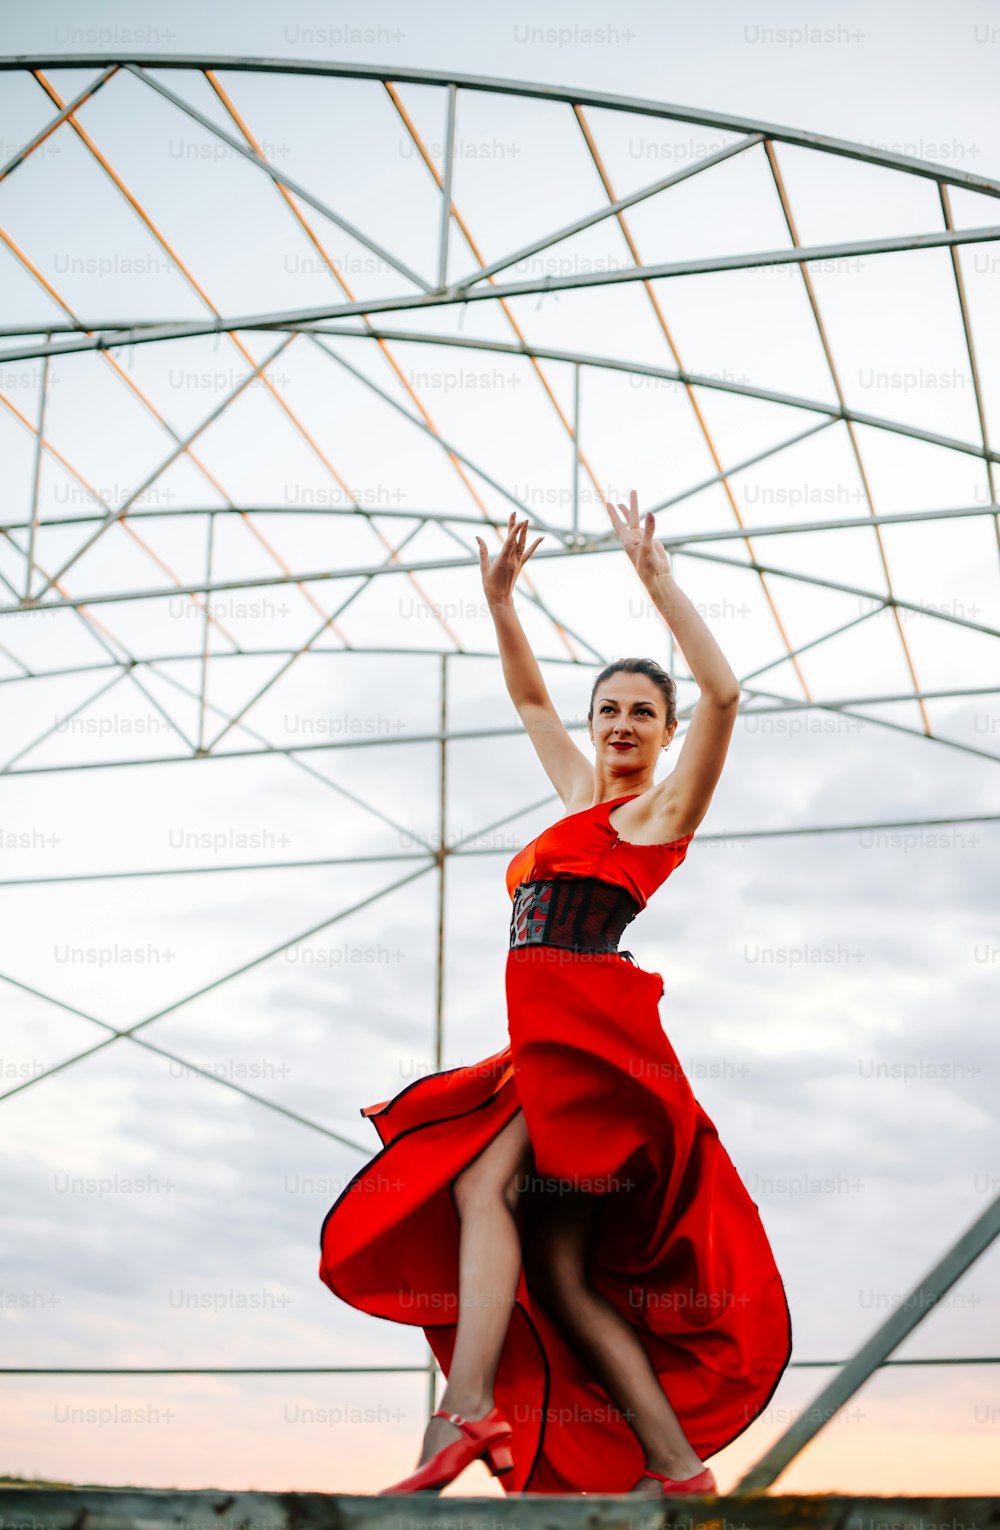 赤いドレスを着た女性が空中に飛び跳ねている